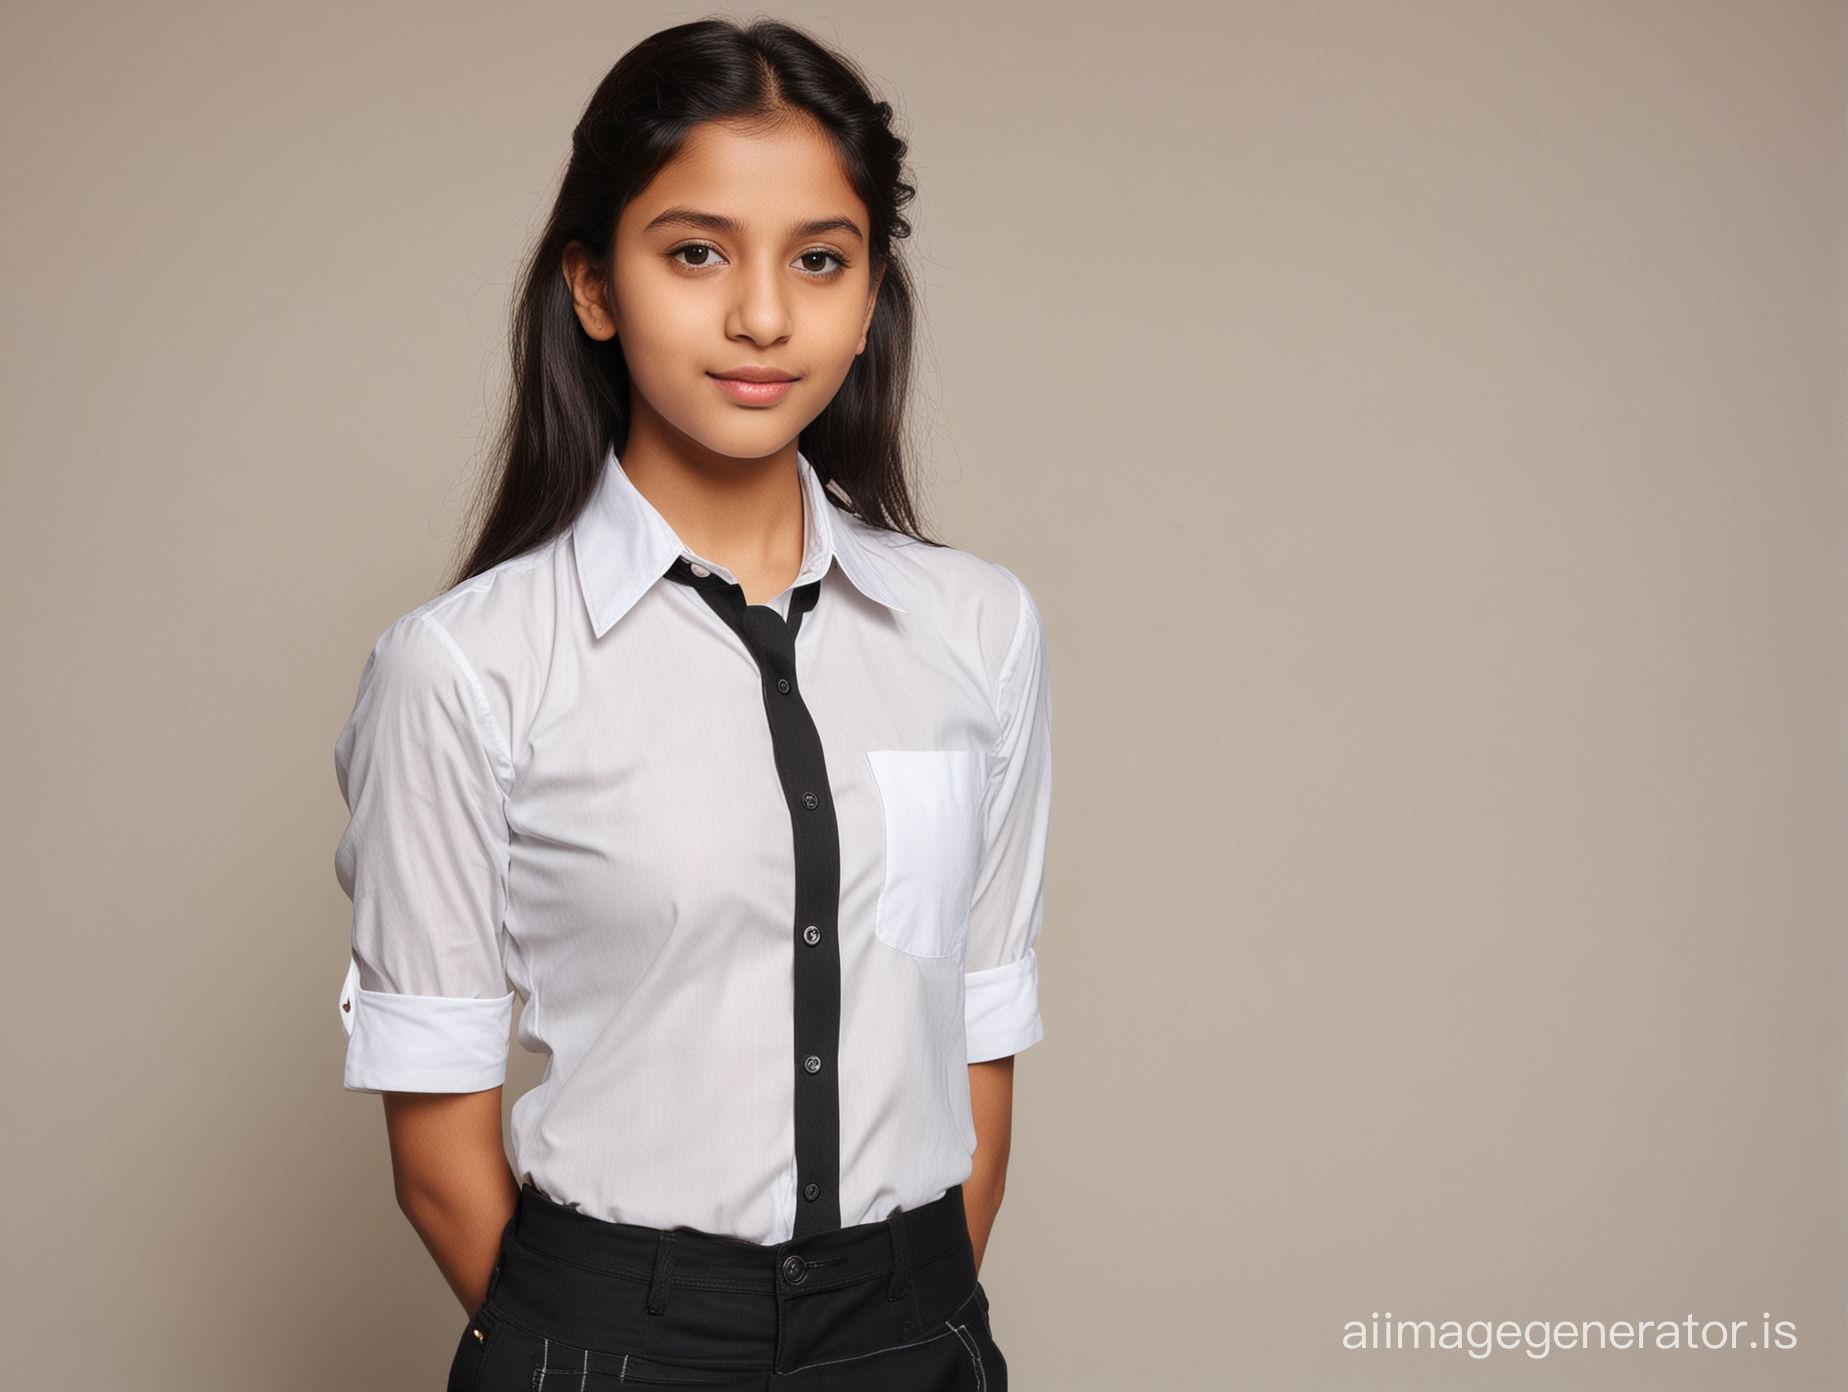 14 year Indian girl, fair skin, full body, school girl, black shirt, white top